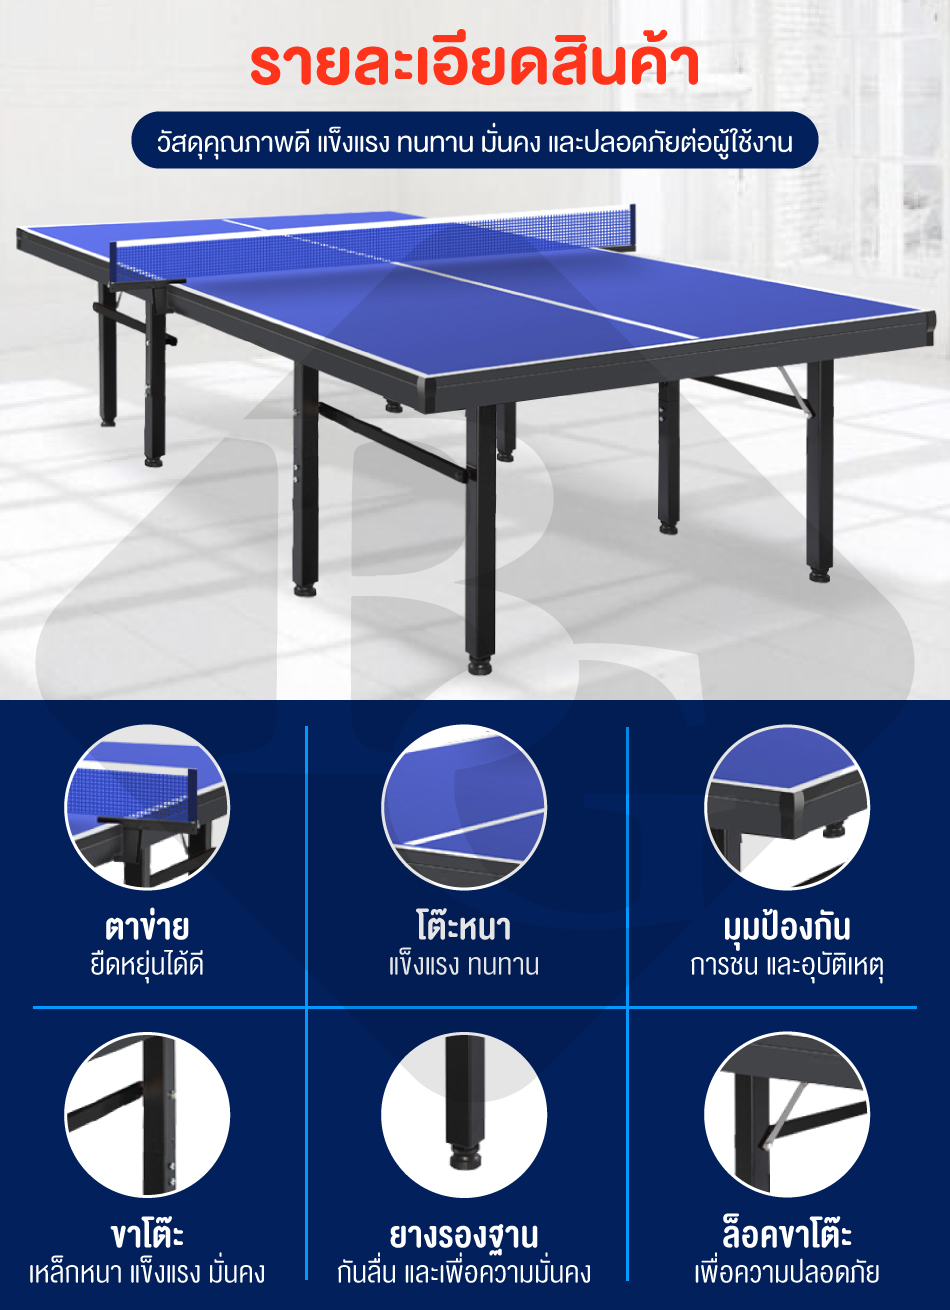 รูปภาพรายละเอียดของ B&G โต๊ะปิงปองมาตรฐานแข่งขัน โต๊ะปิงปอง ออกกำลังกายในร่ม สามารถพับเก็บได้ โครงเหล็กแข็งแรง Table 12.24 mm HDF Table Tennis รุ่น 5007